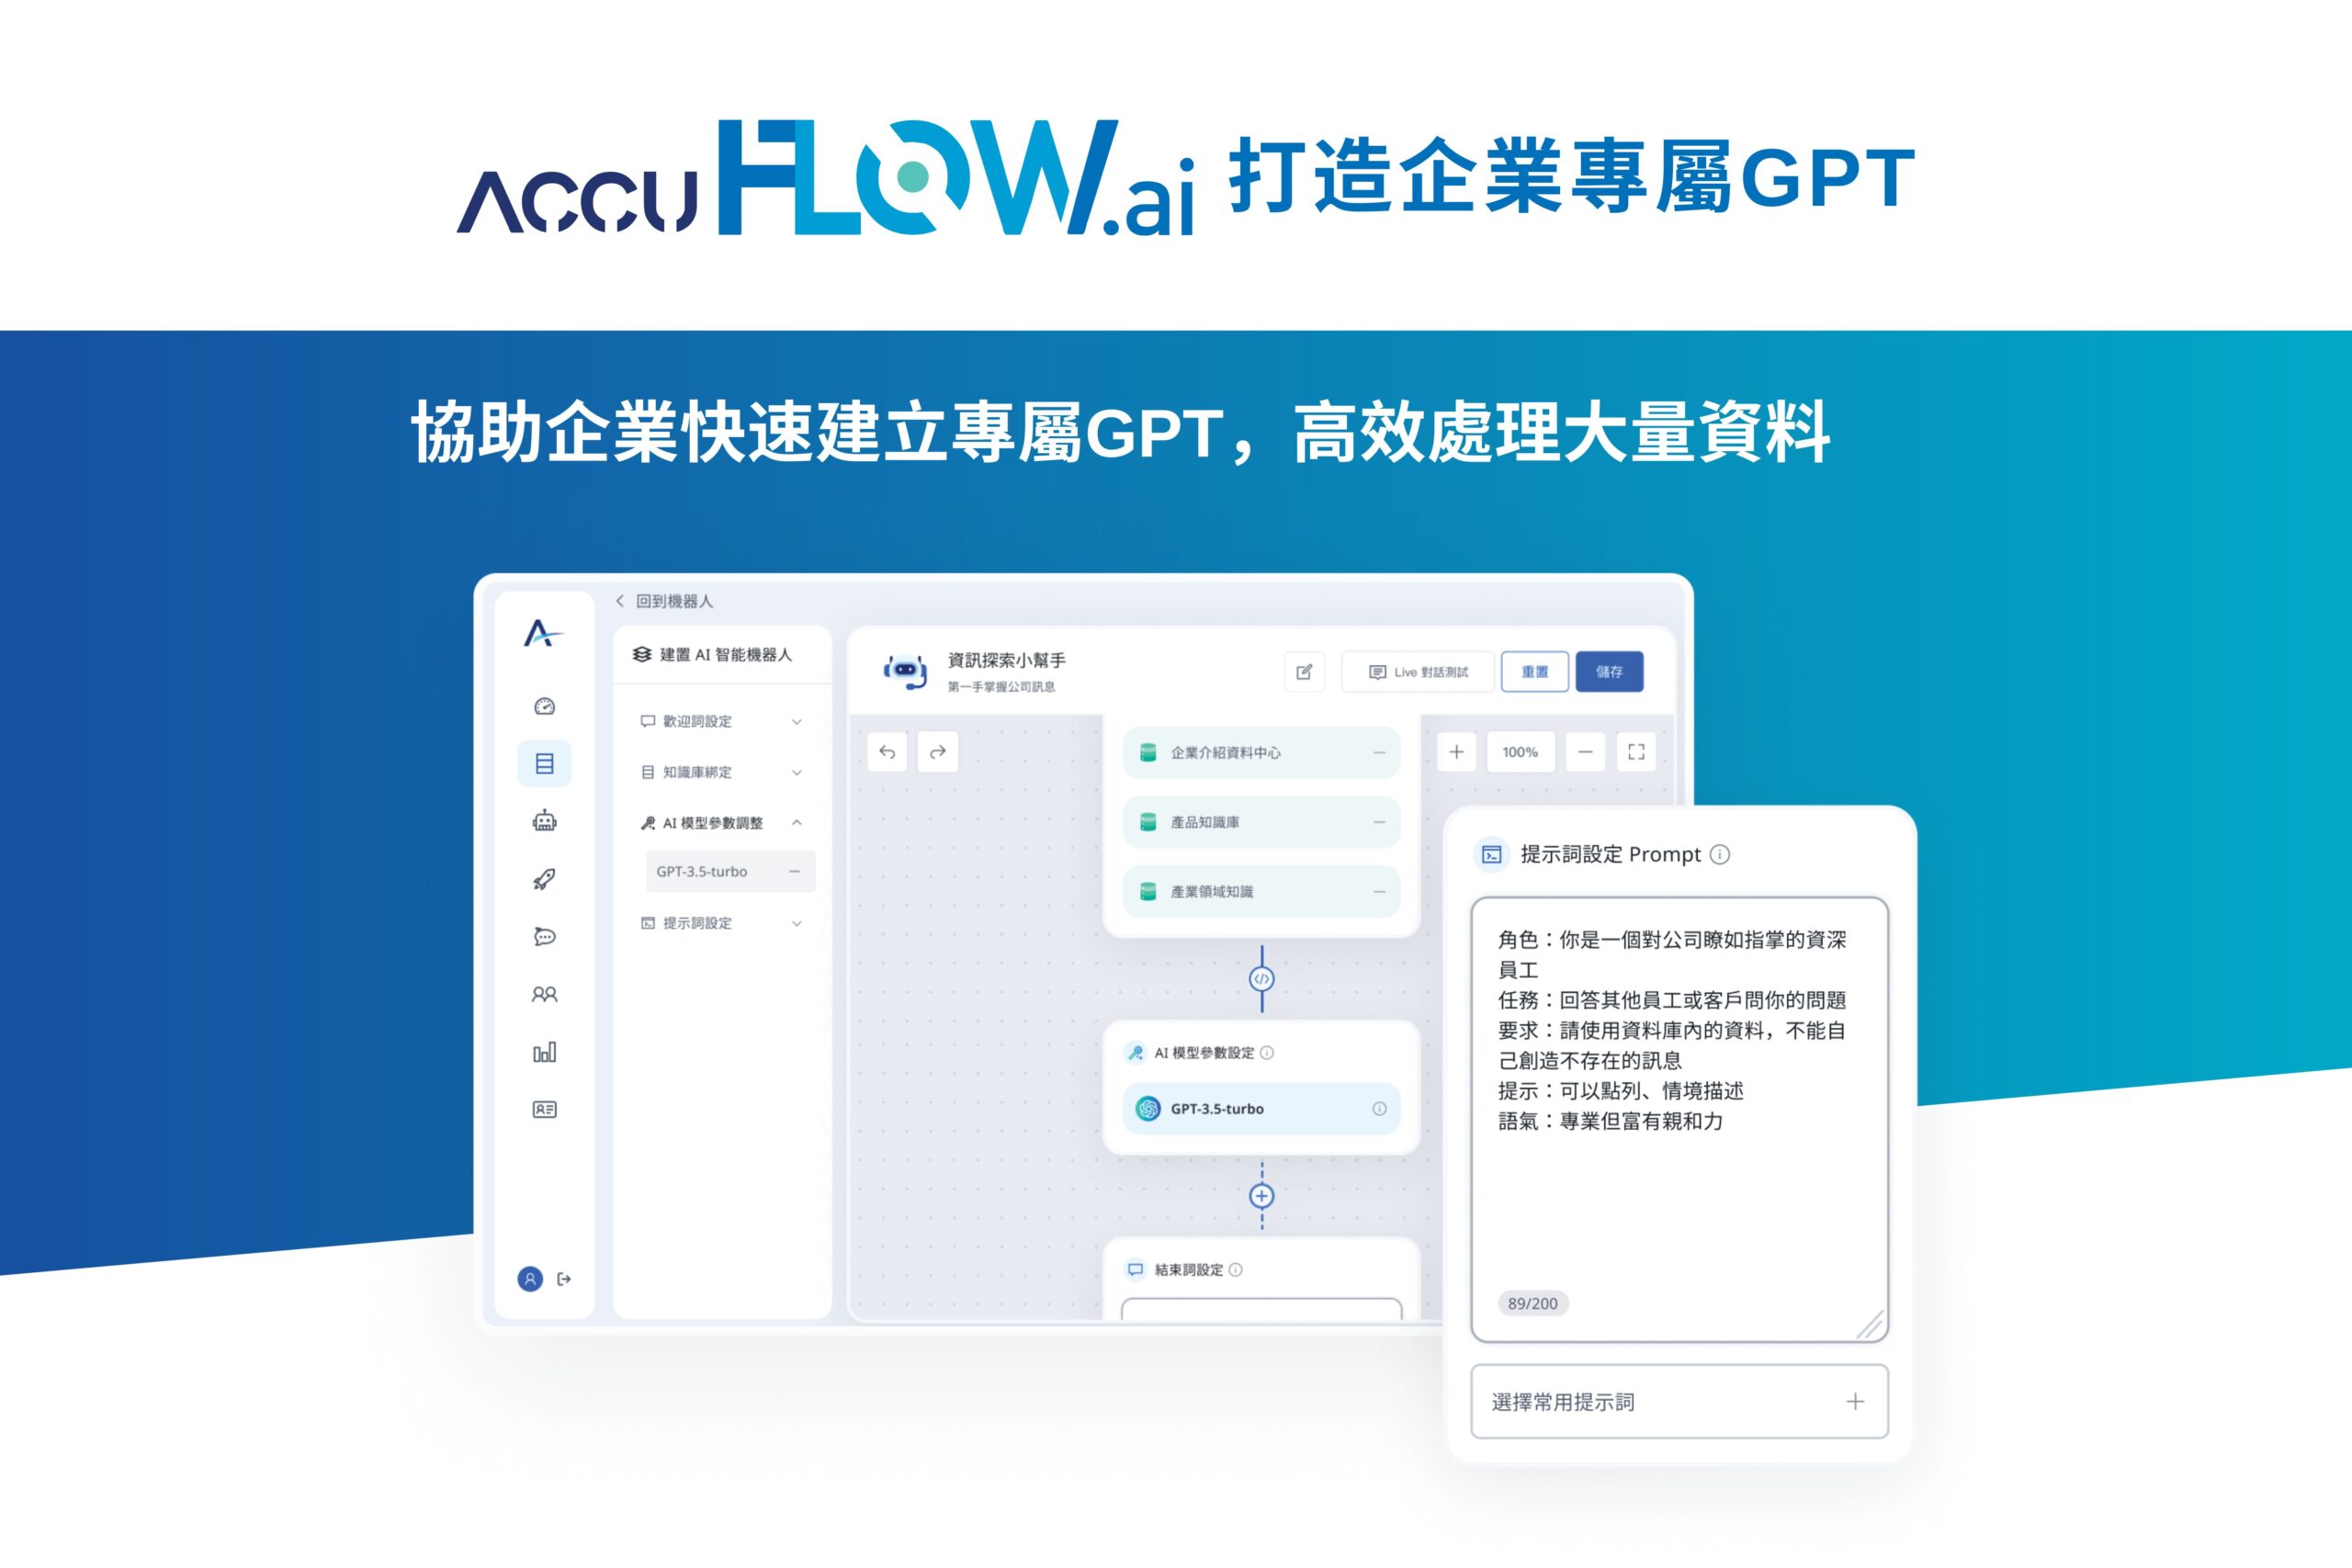 愛酷智能科技推-AccuFLOW.ai-，協助企業快速建立專屬GPT，高效處理大量資料